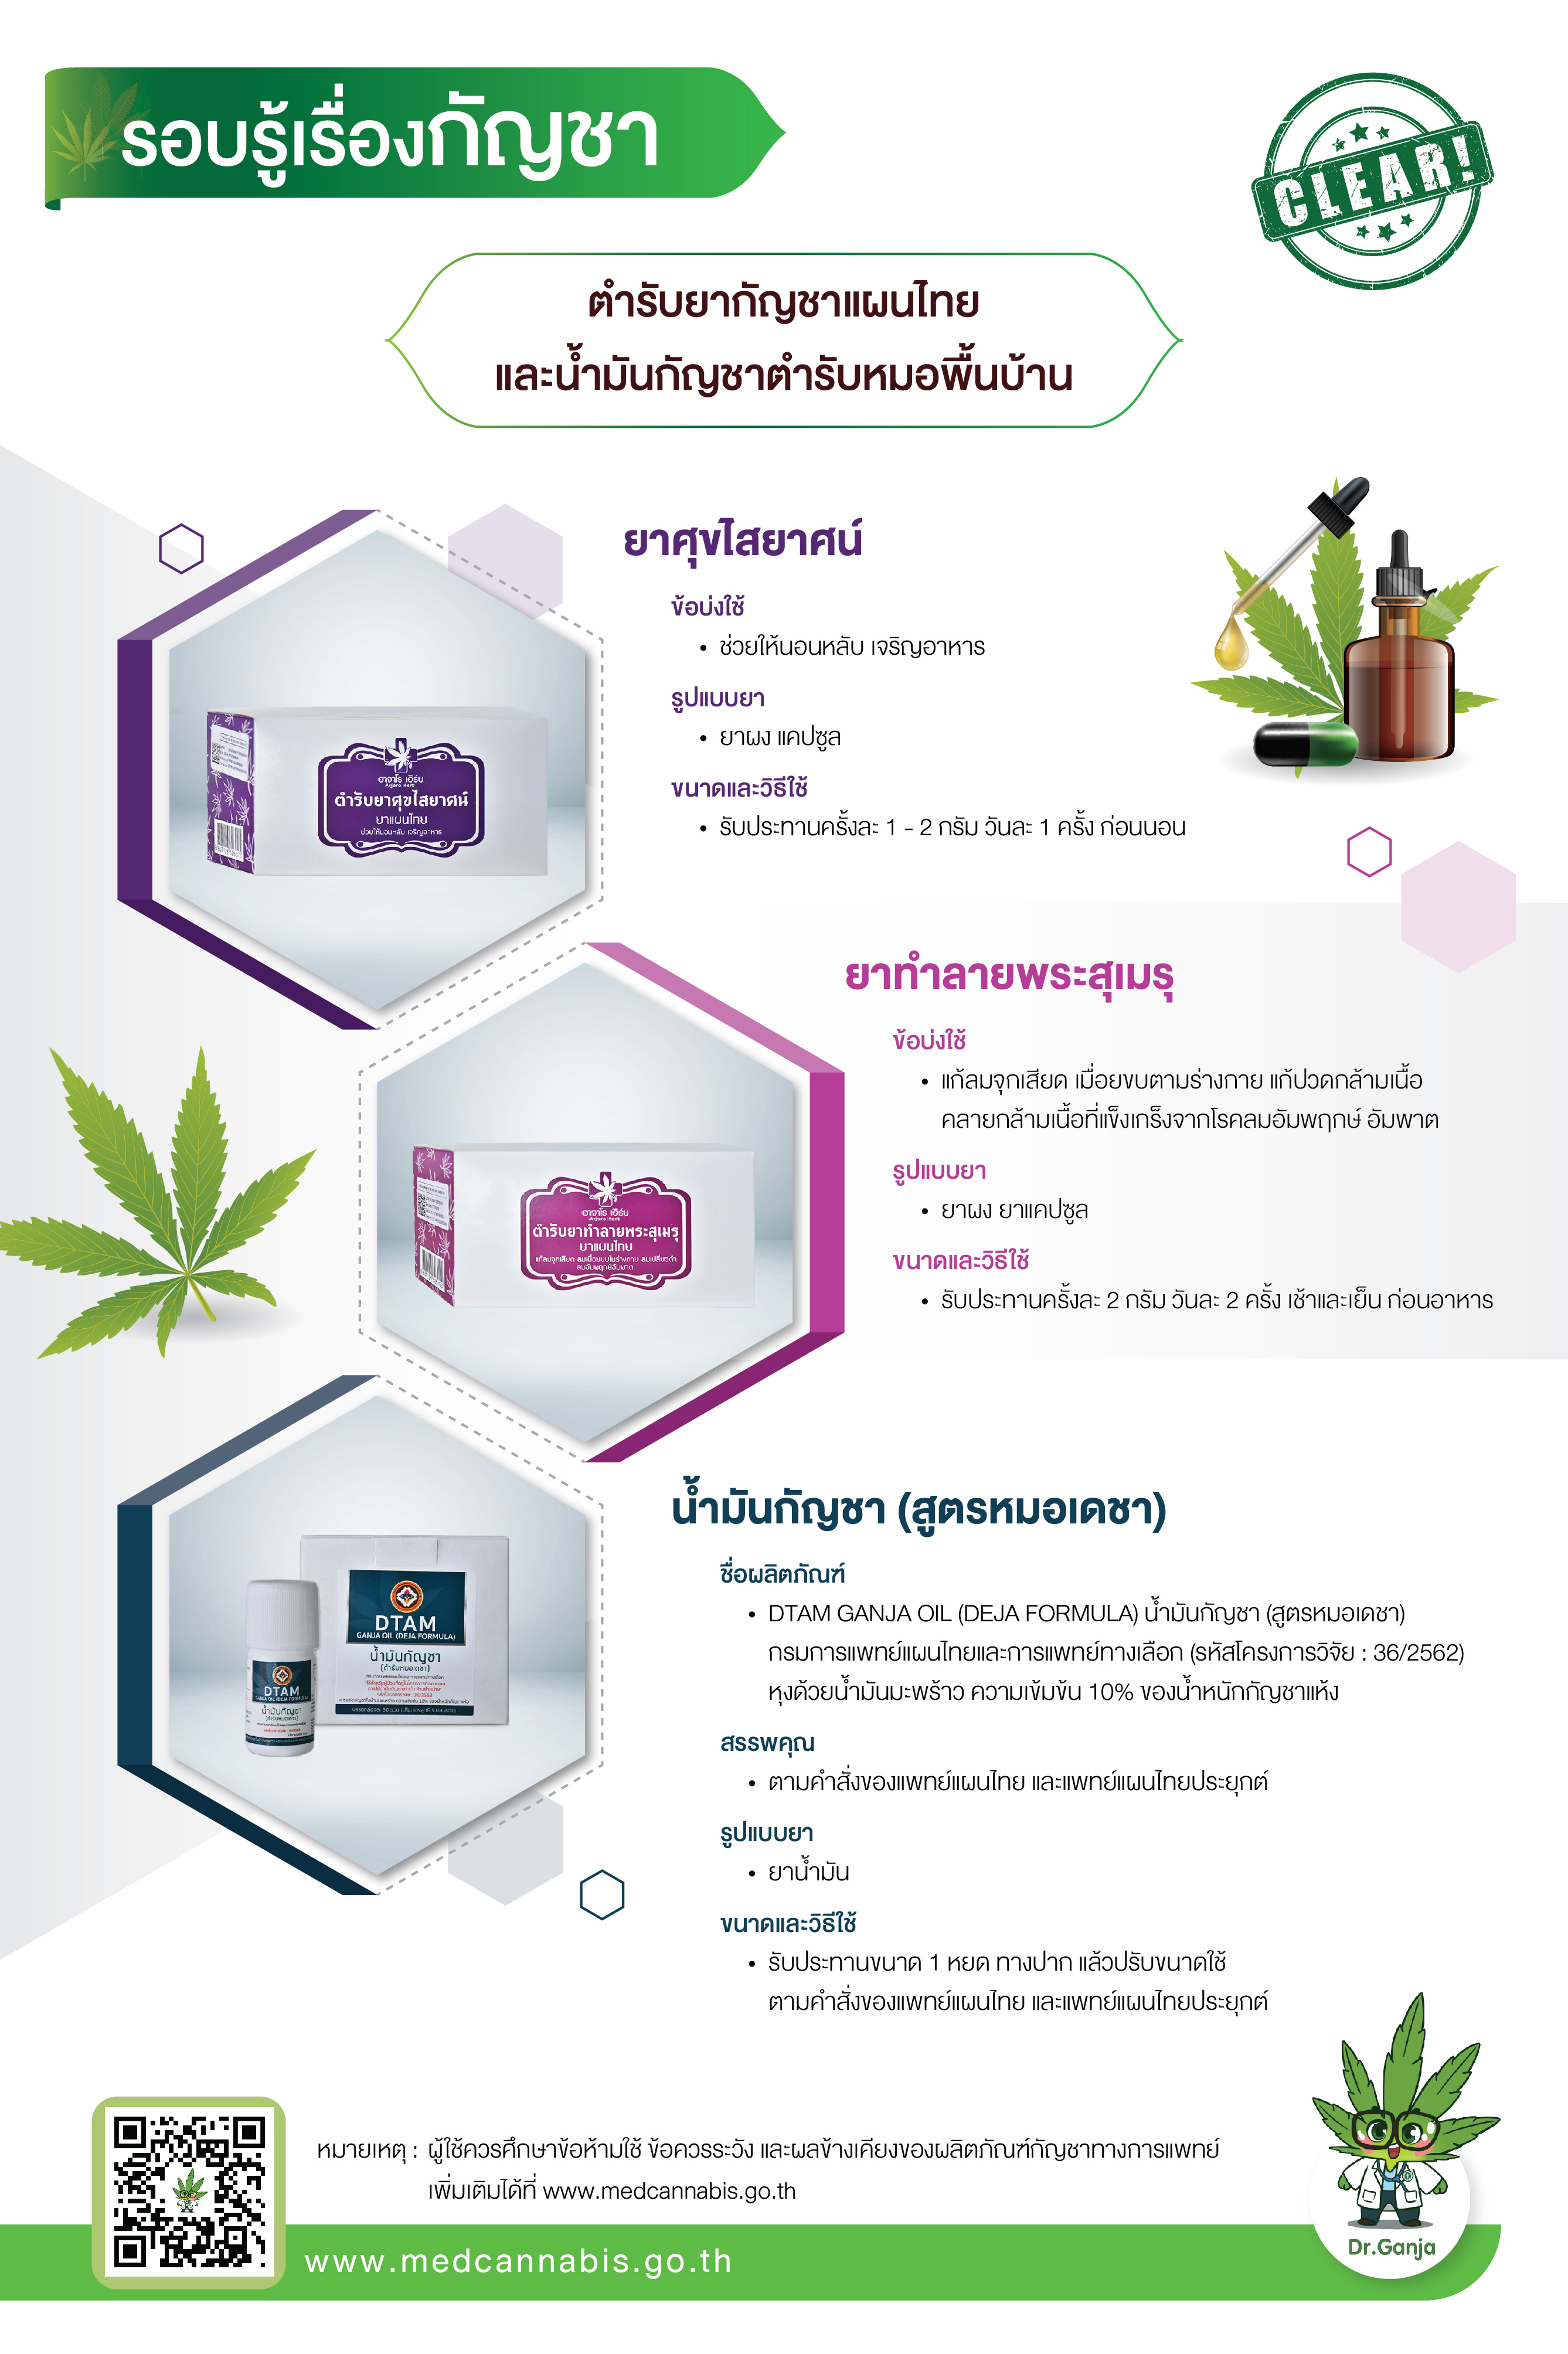 ที่มา : medcannabis.go.th 